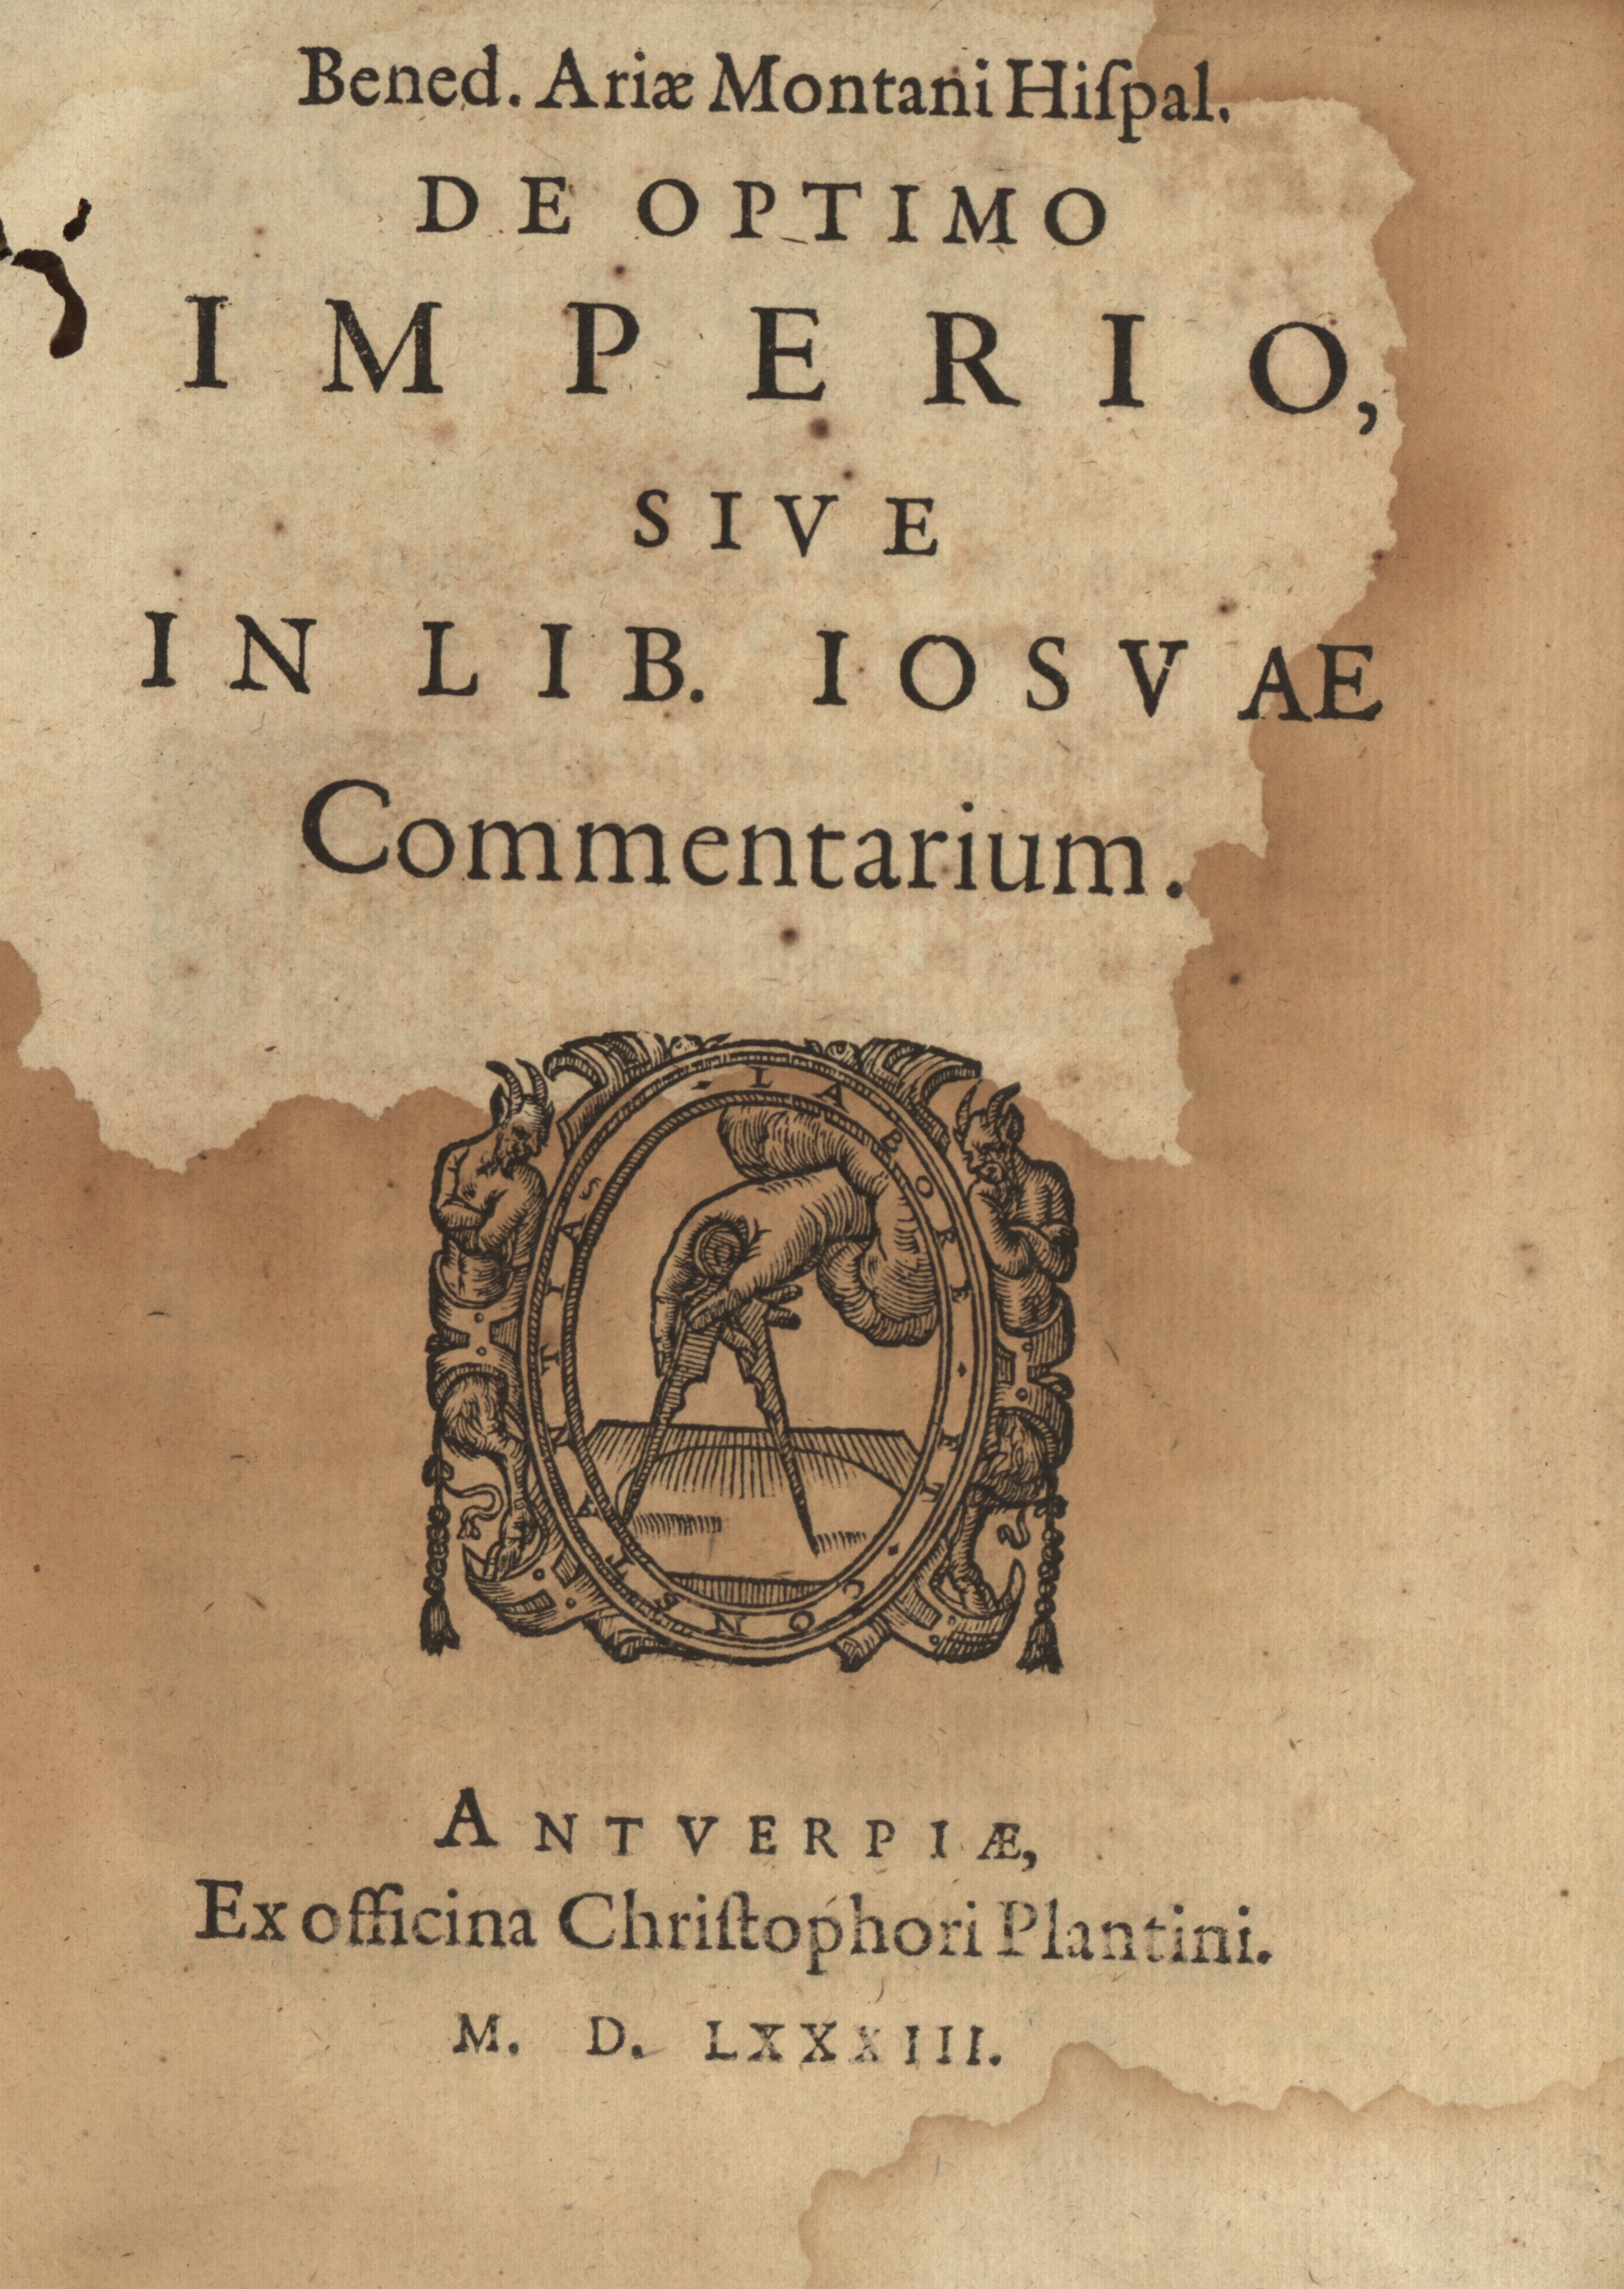 Bened. Ariae Montani Hispal. de optimo imperio, sive in lib. Iosvae Commentarium